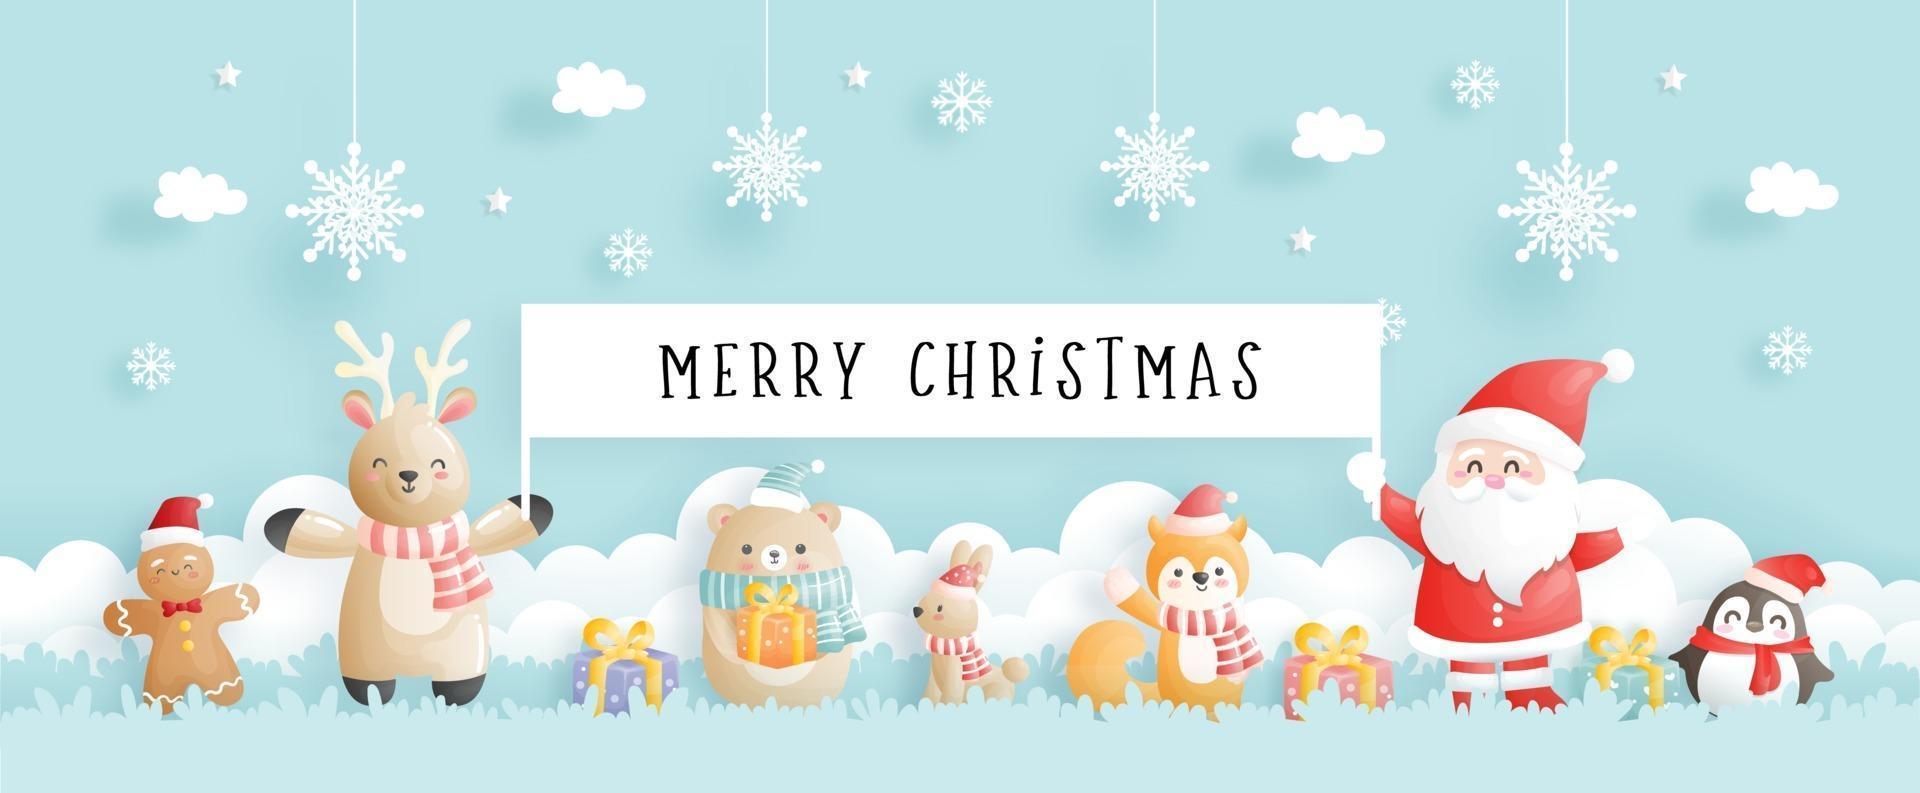 tarjeta de navidad, celebraciones con santa y amigos, vector